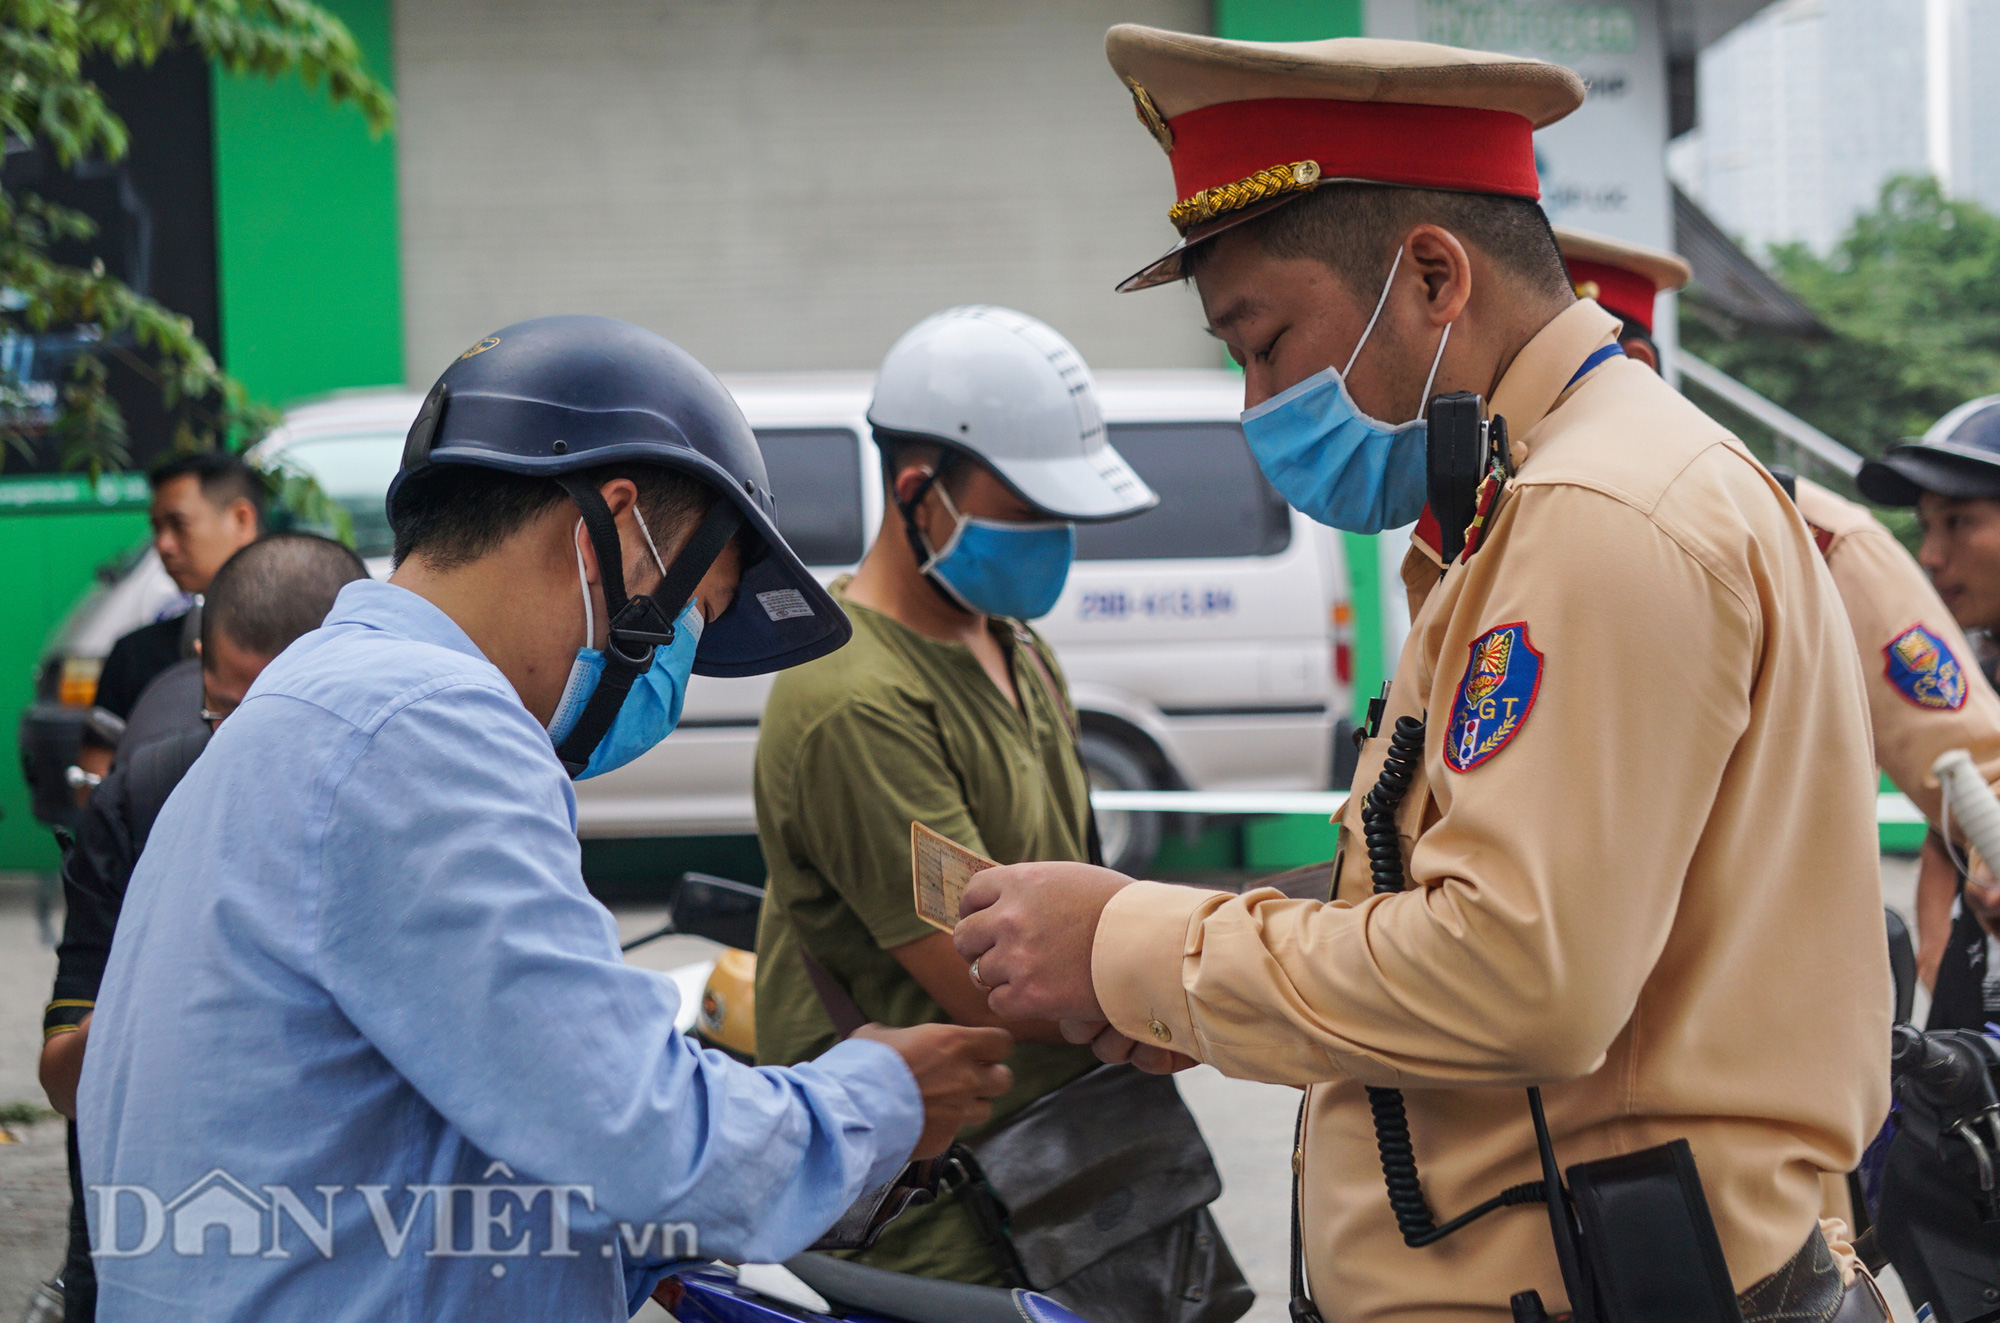 CSGT Hà Nội bắt đầu ra quân tổng kiểm soát các phương tiện đường bộ - Ảnh 4.